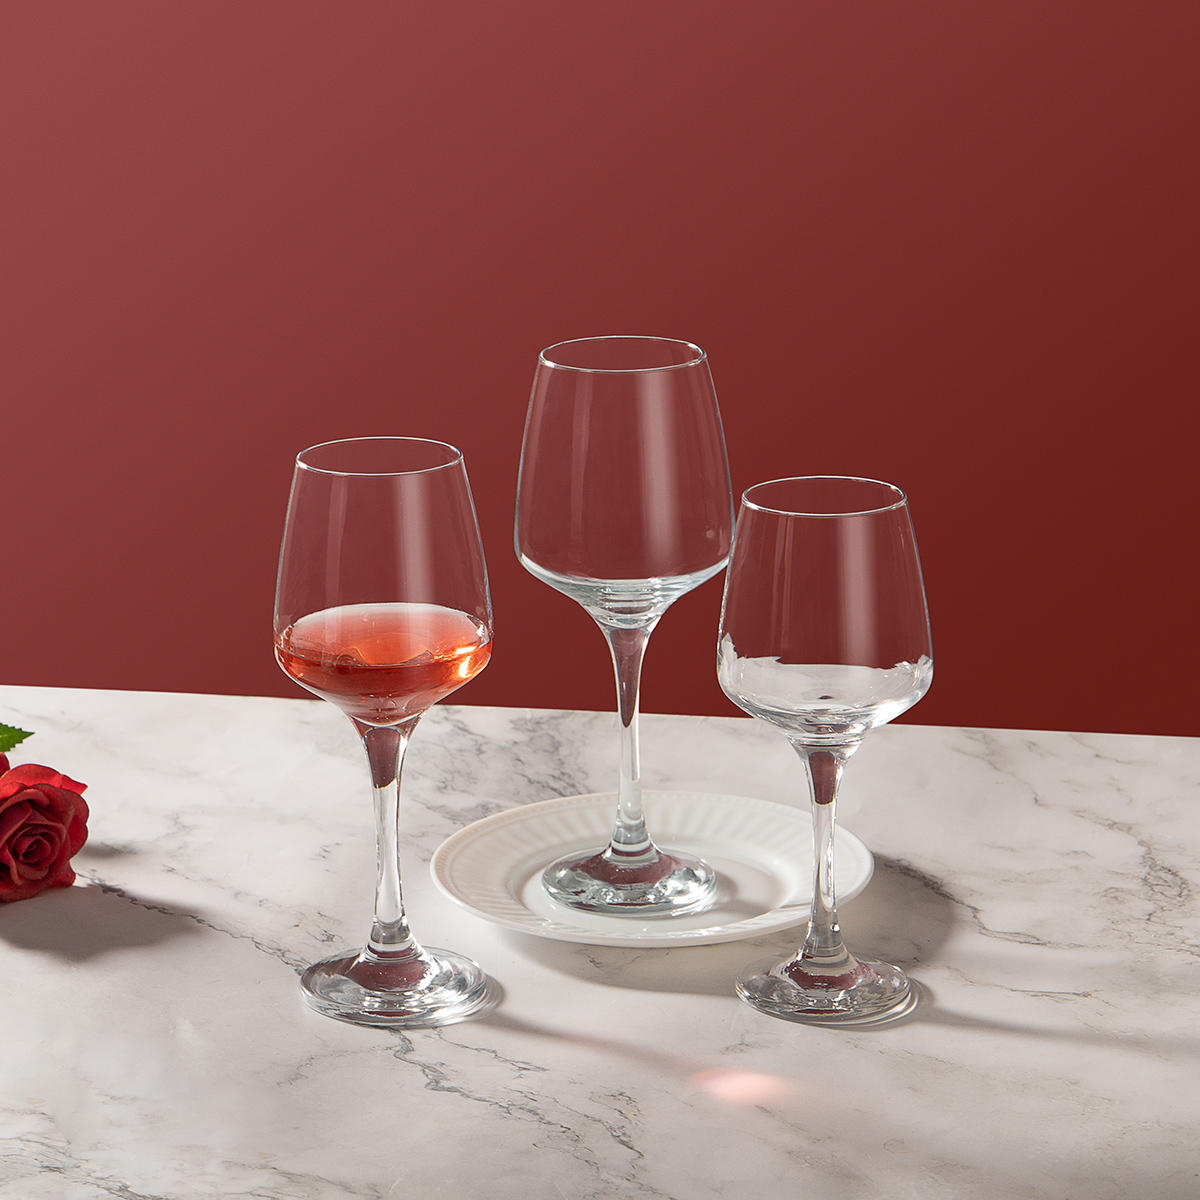 wine glasses for restaurant